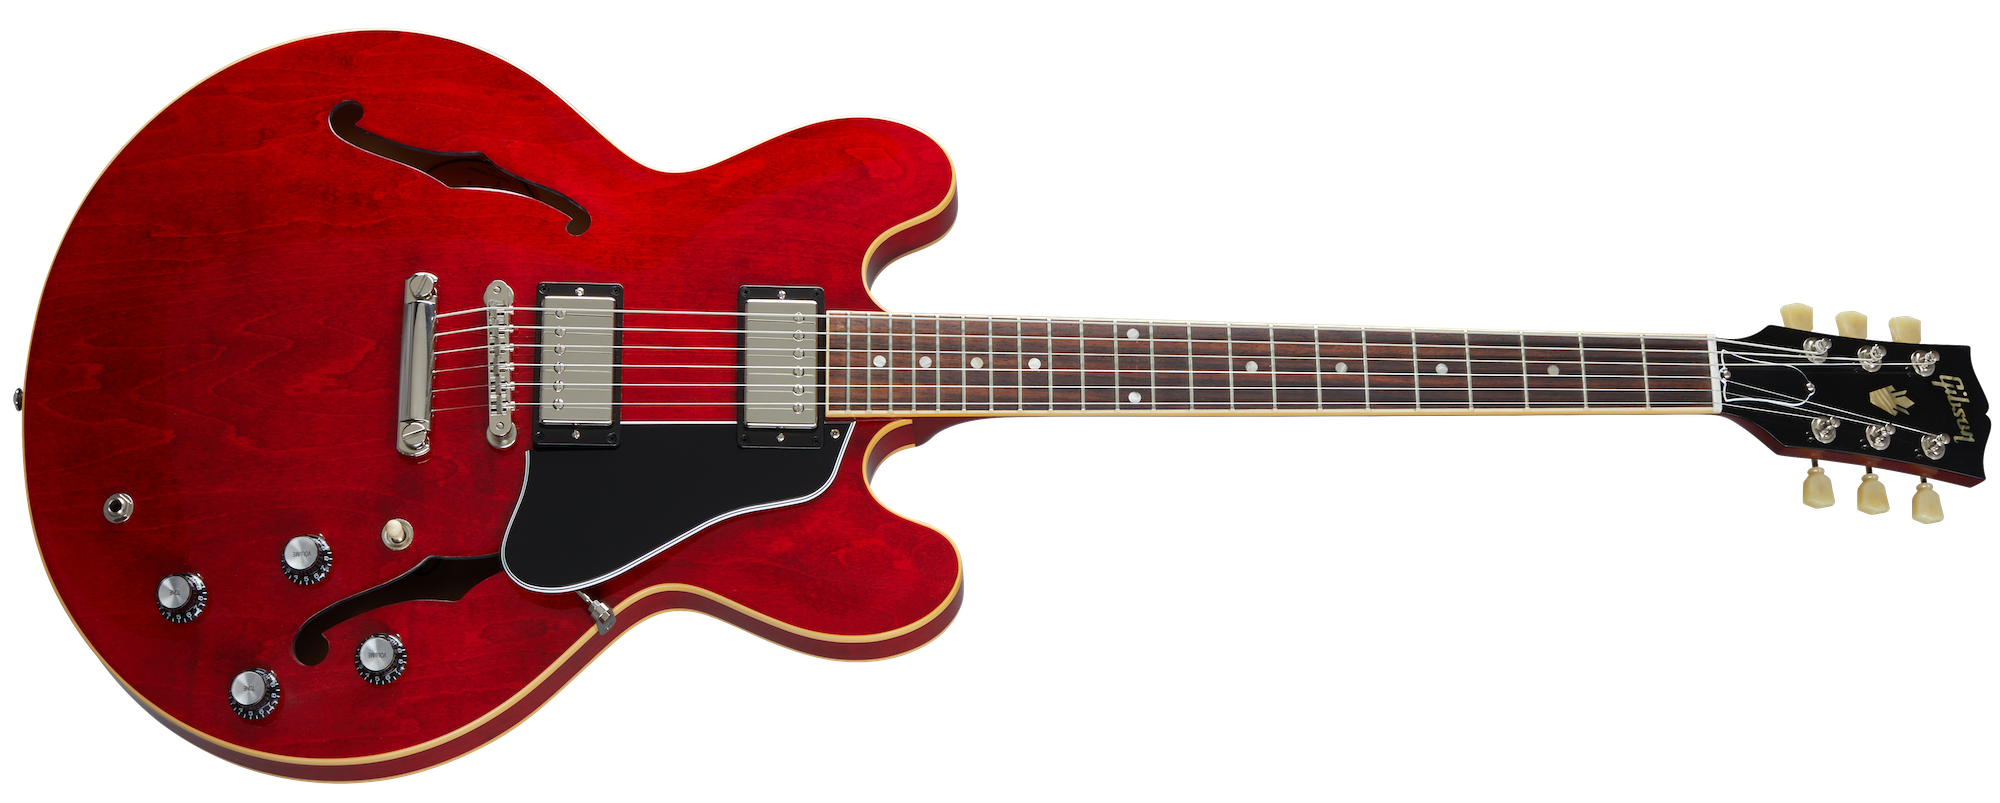 ES-335 Sixties Cherry